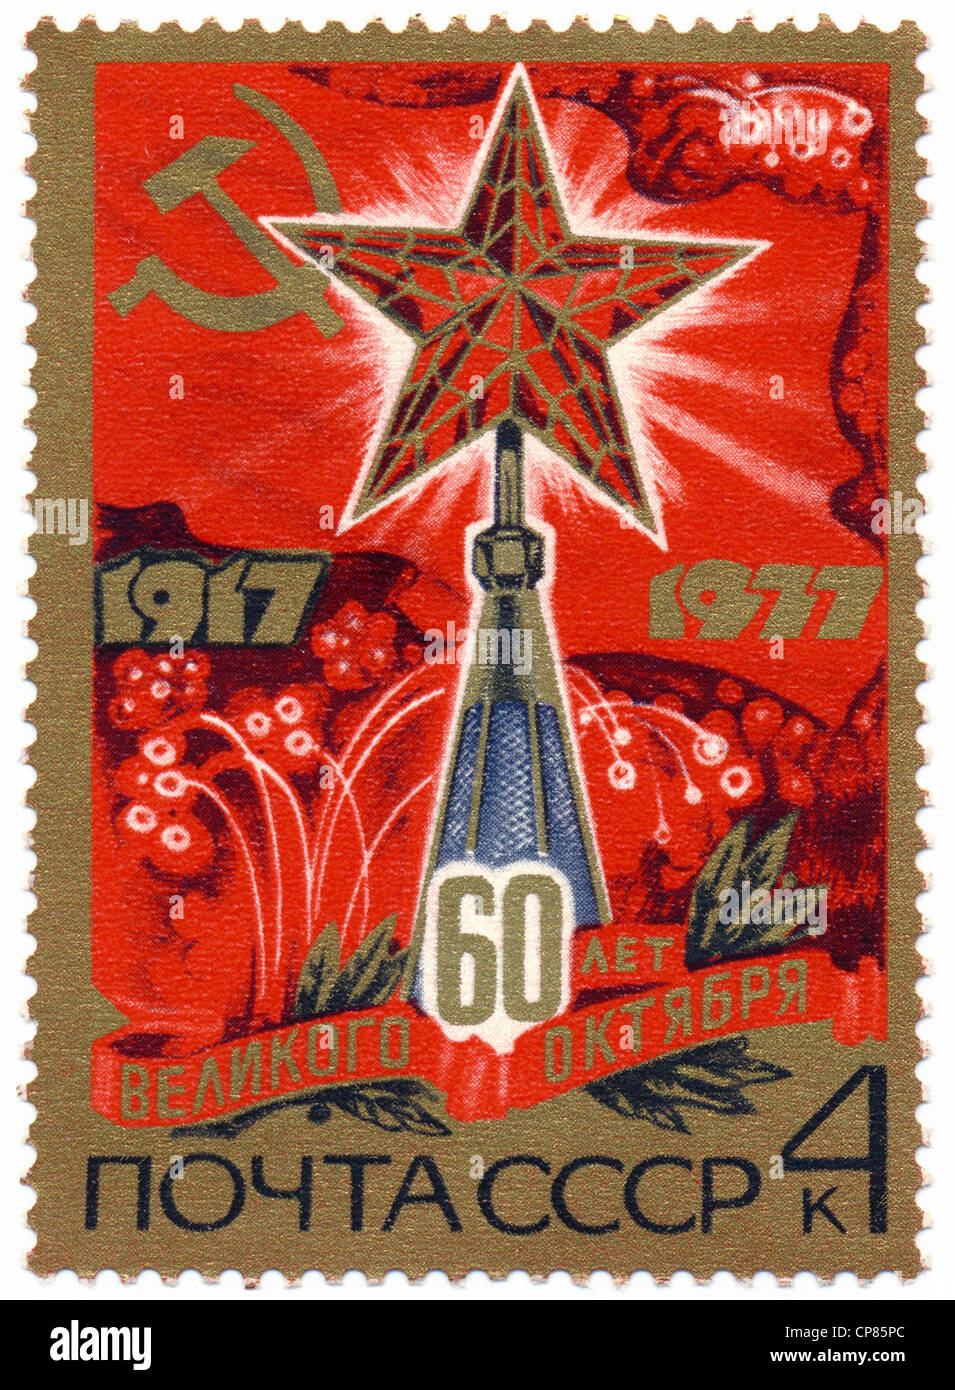 Timbre historique pour le 60e anniversaire de la révolution d'octobre 1977, l'URSS, safe, Historische zum 60. Jahrestag Banque D'Images